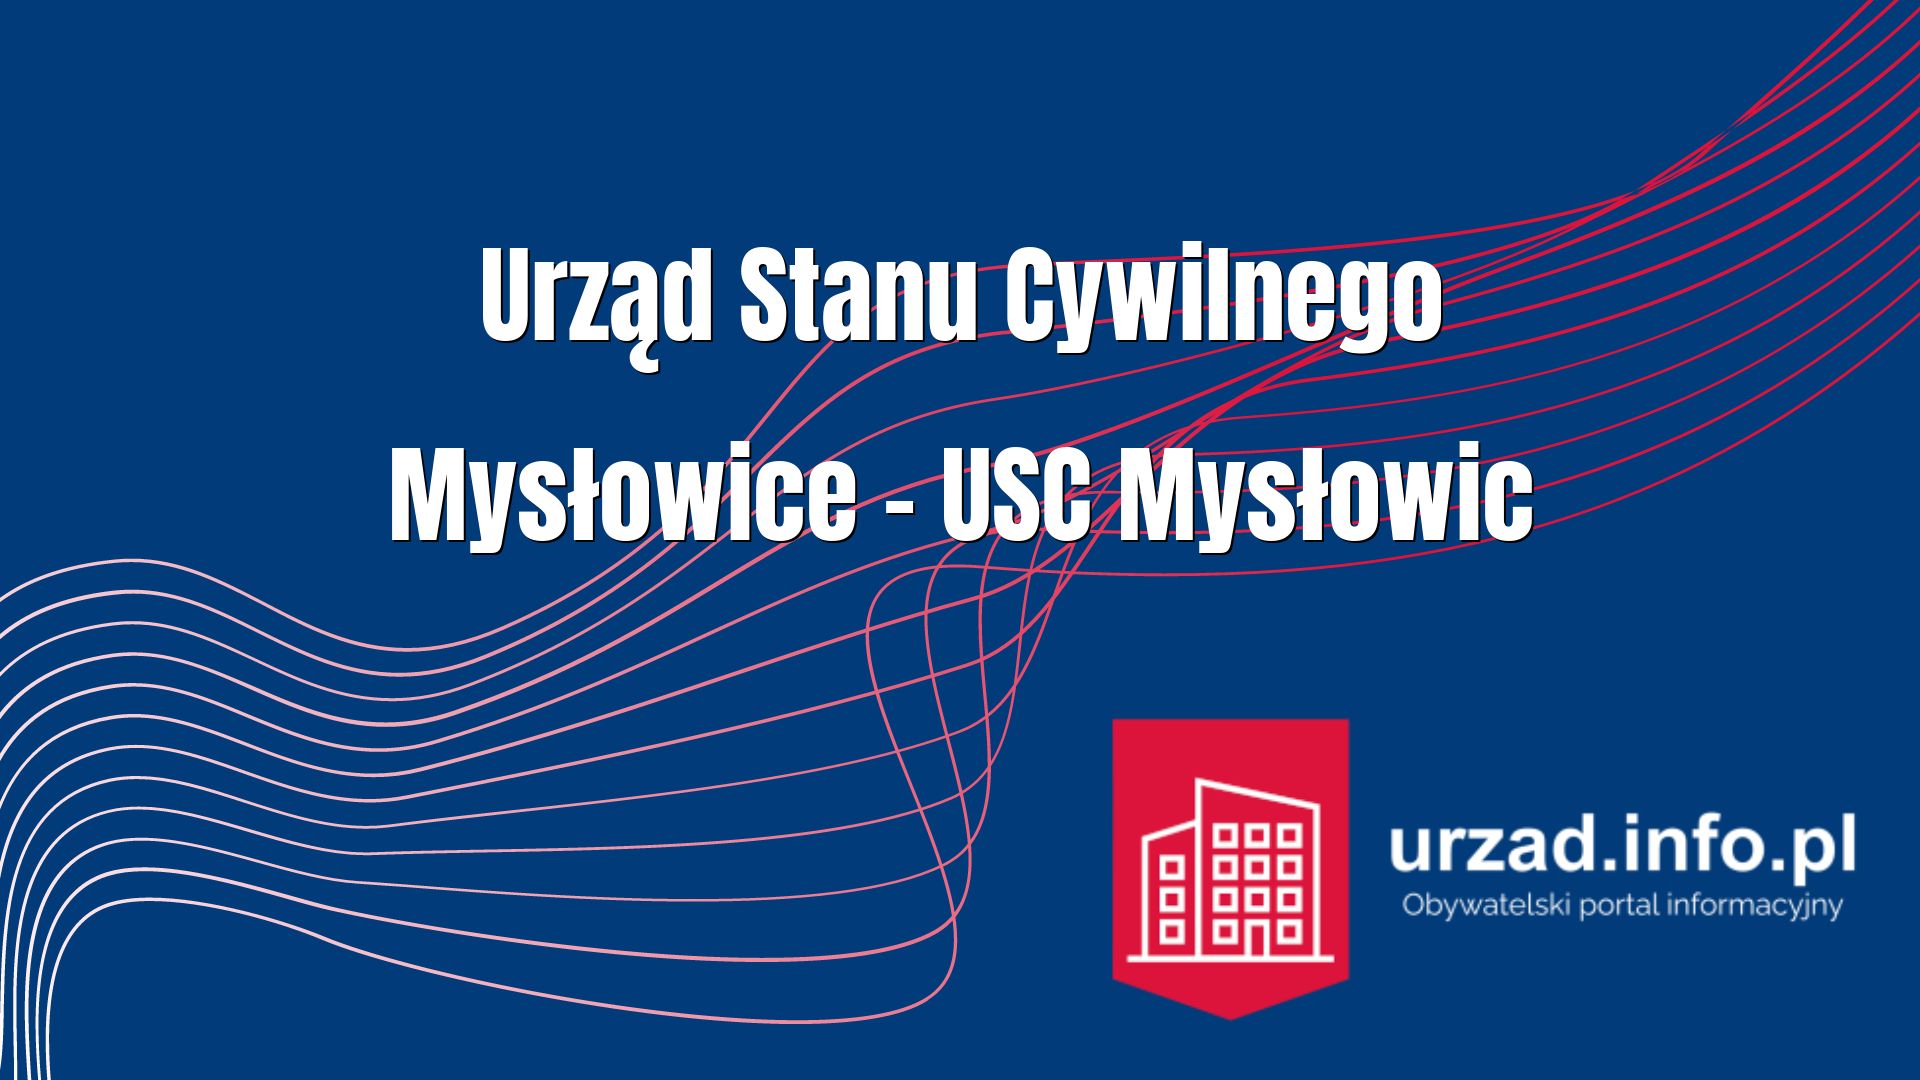 Urząd Stanu Cywilnego Mysłowice – USC Mysłowic